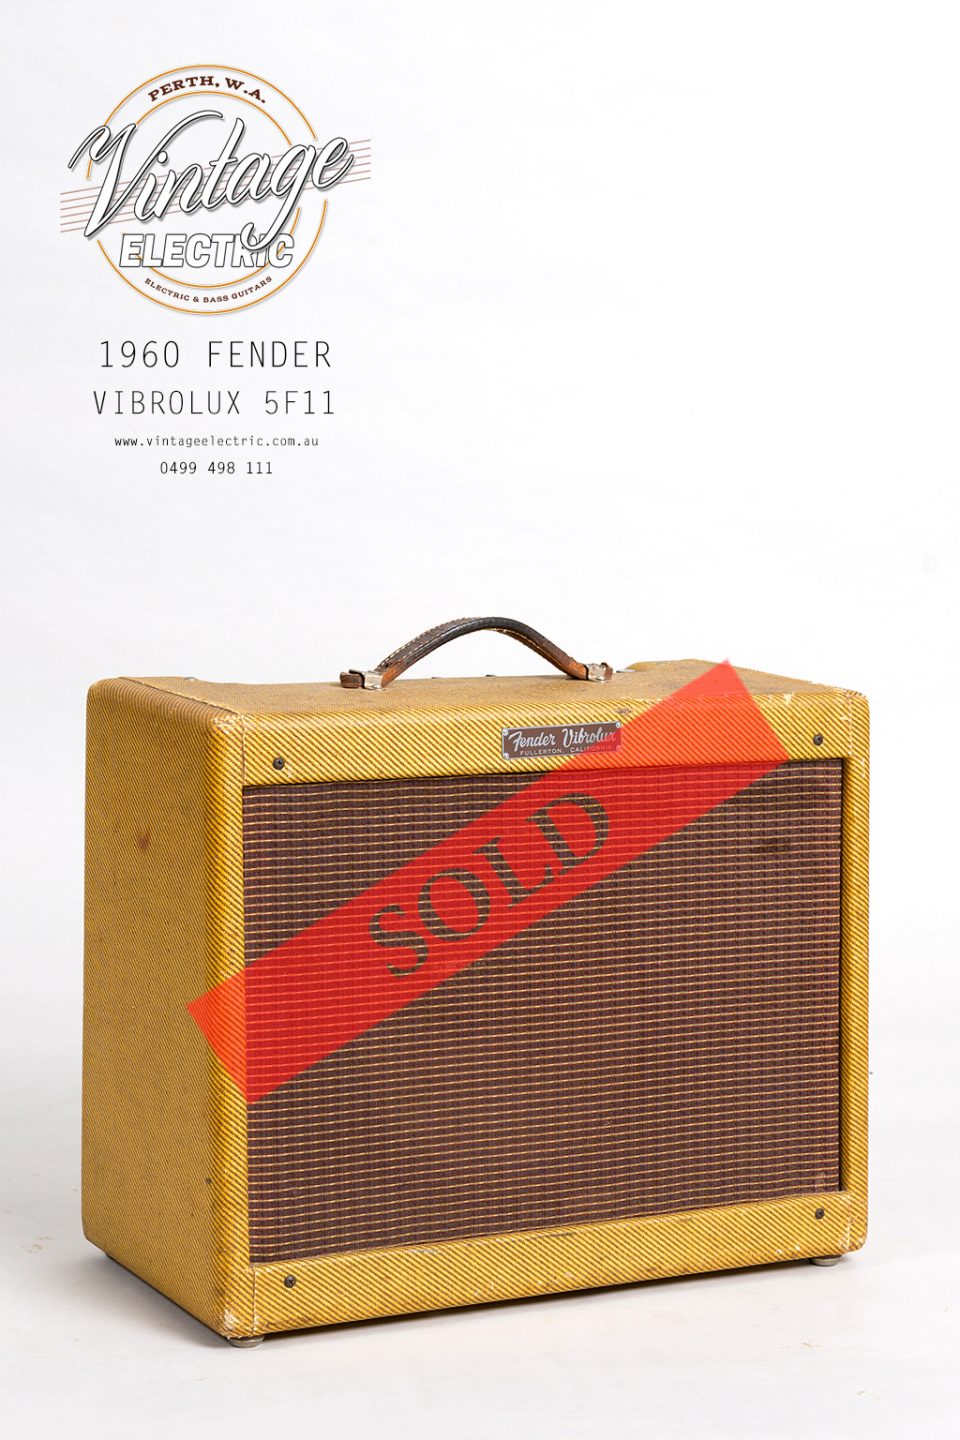 1960 Fender Vibrolux 5F11 Large SOLD